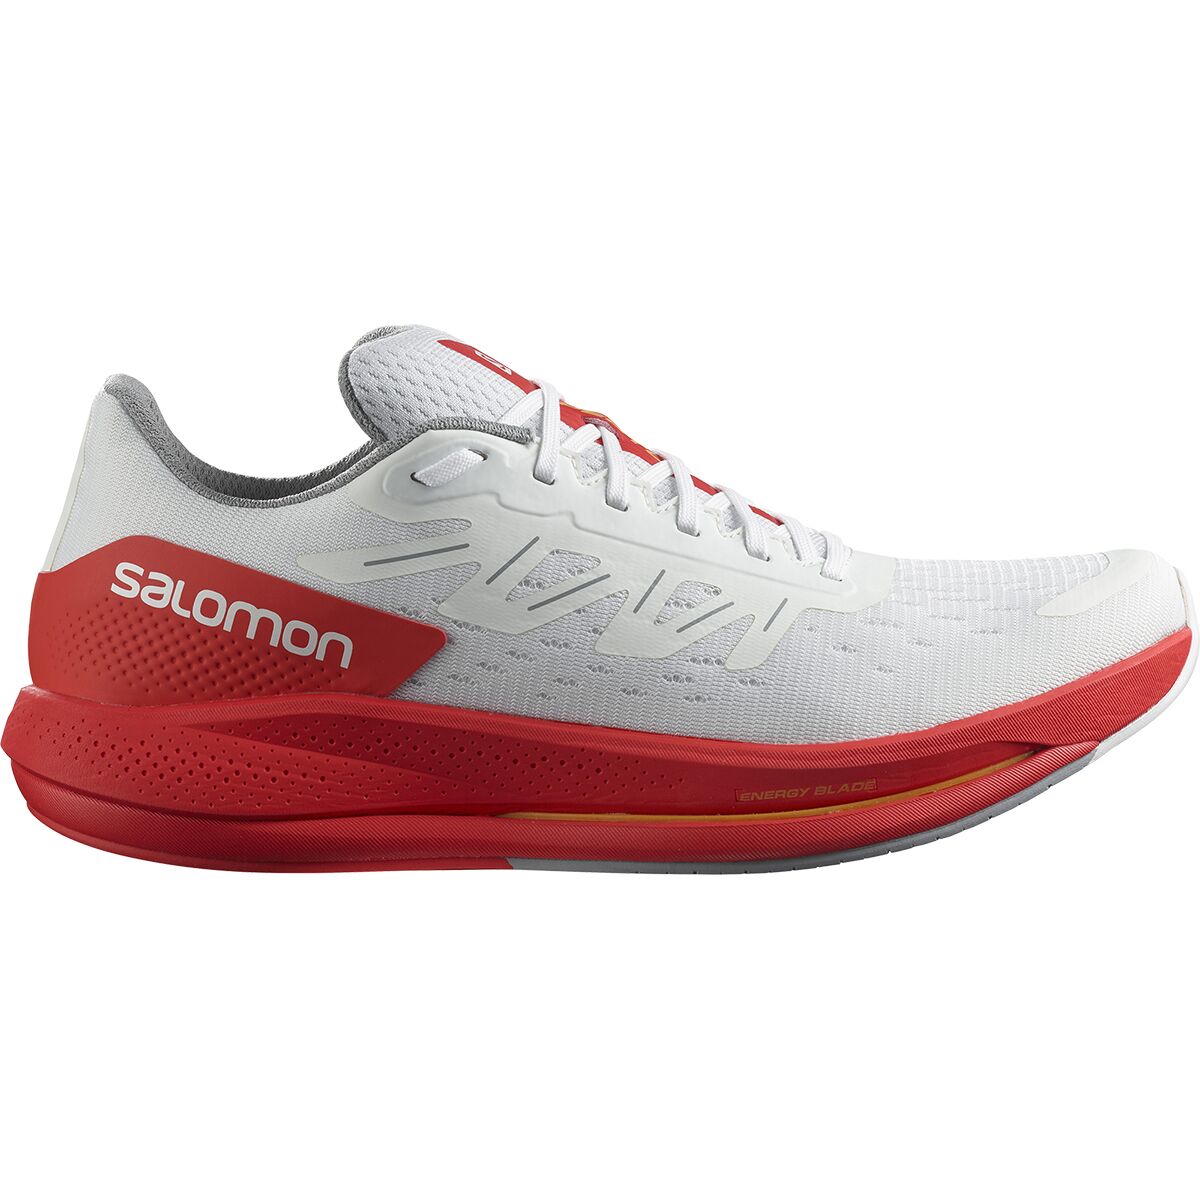 Salomon Spectur Running Shoe - Men's